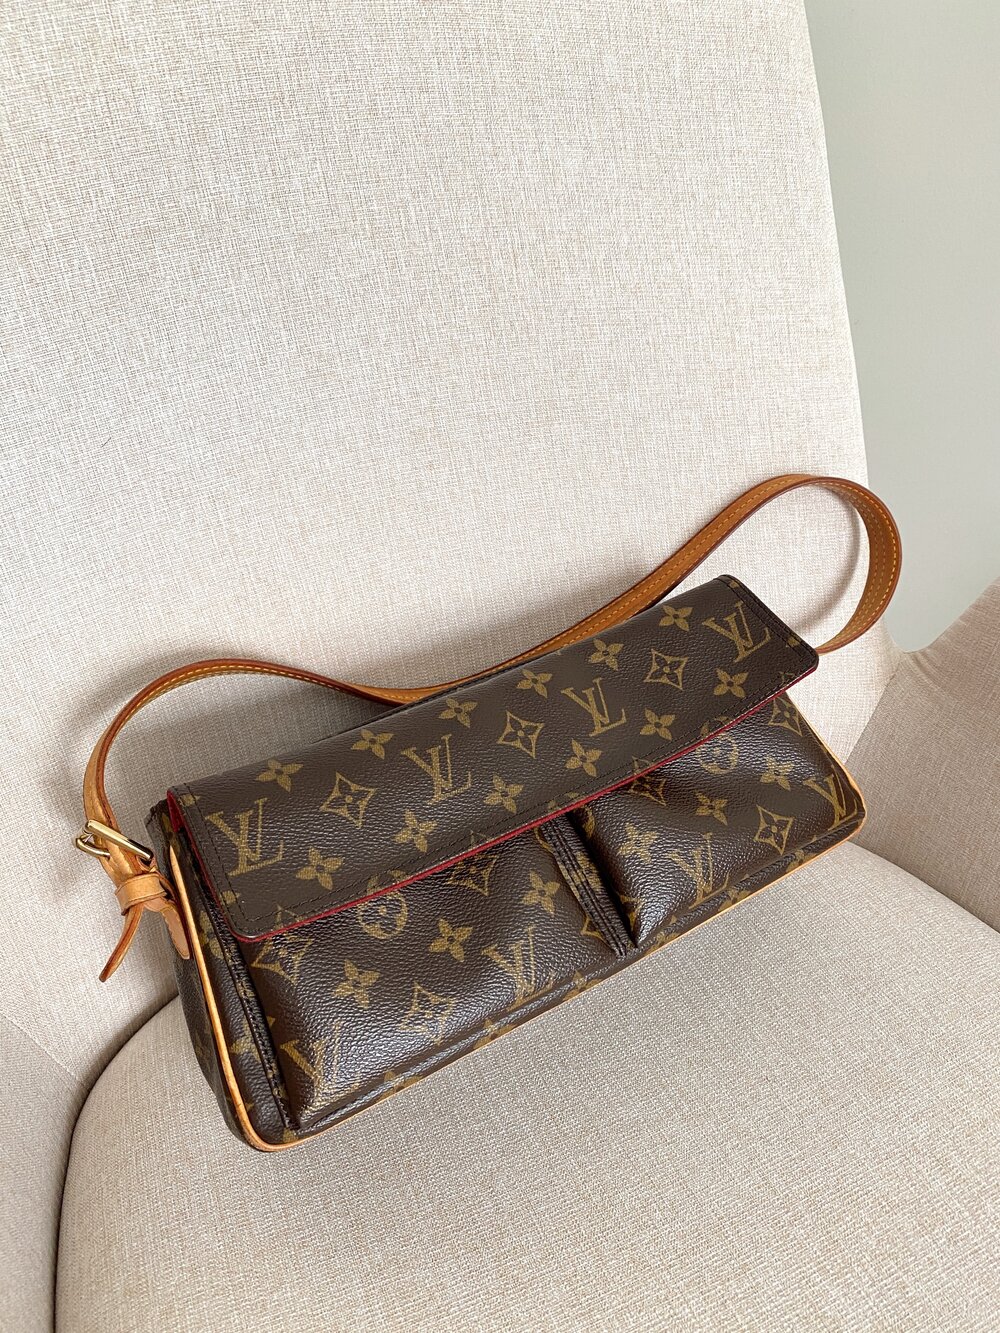 Vintage Louis Vuitton Monogram Viva-Cite MM Handbag Excellent Condition